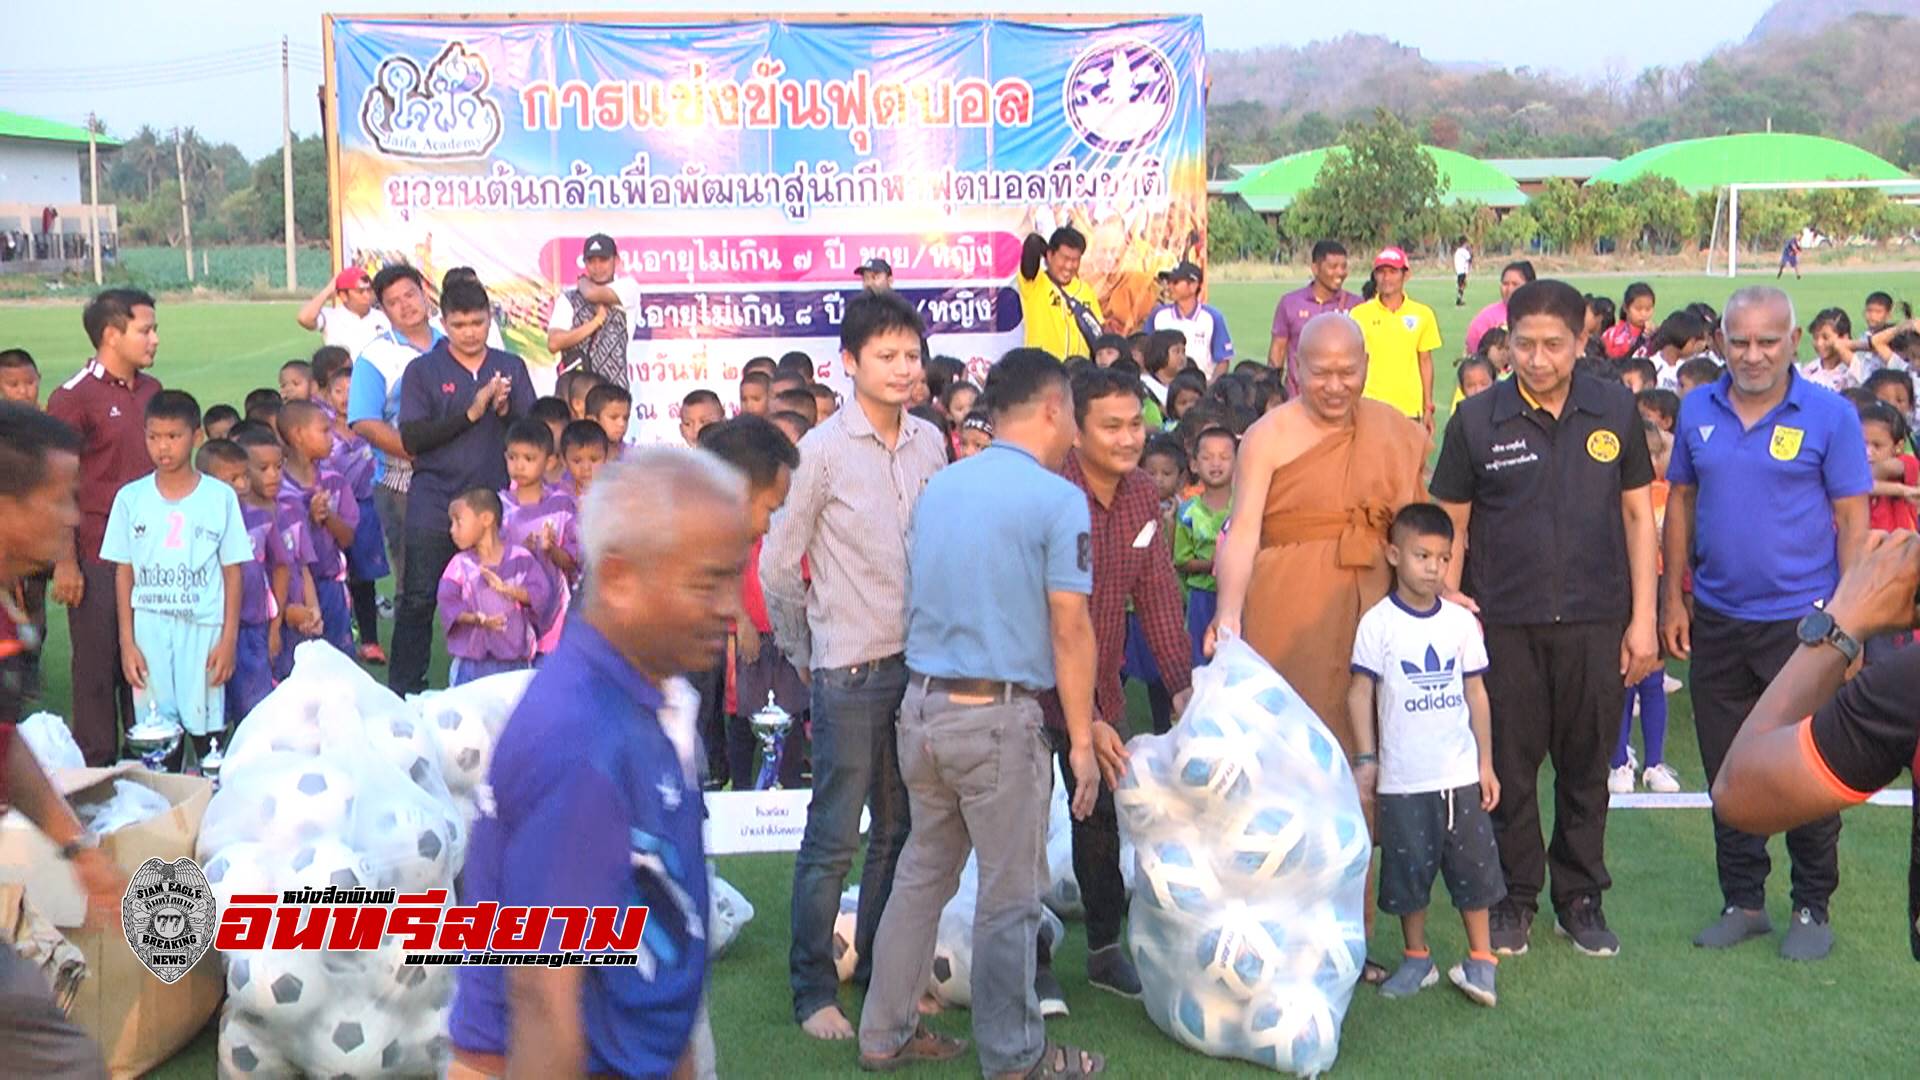 ลพบุรี-พิธีปิดการแข่งขันฟุตบอลยุวชนต้นกล้าสู่นักกีฬาทีมชาติ